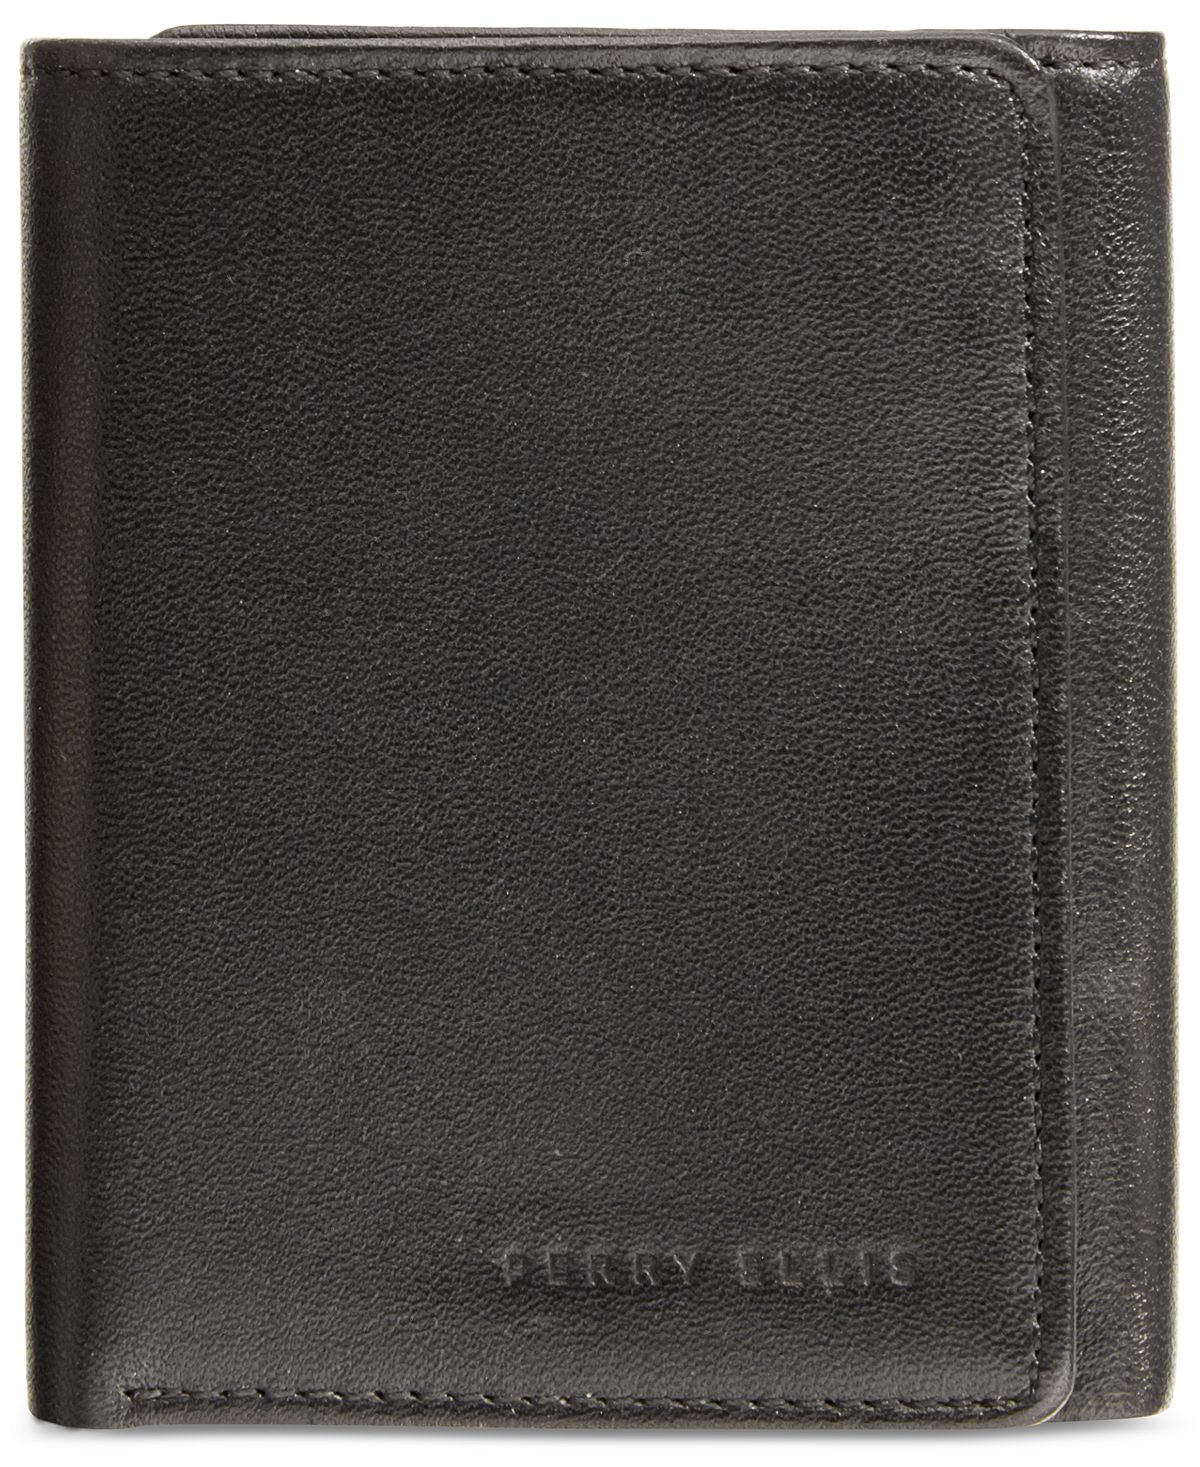 Мужской кожаный тонкий кошелек тройного сложения Gramercy Perry Ellis Portfolio